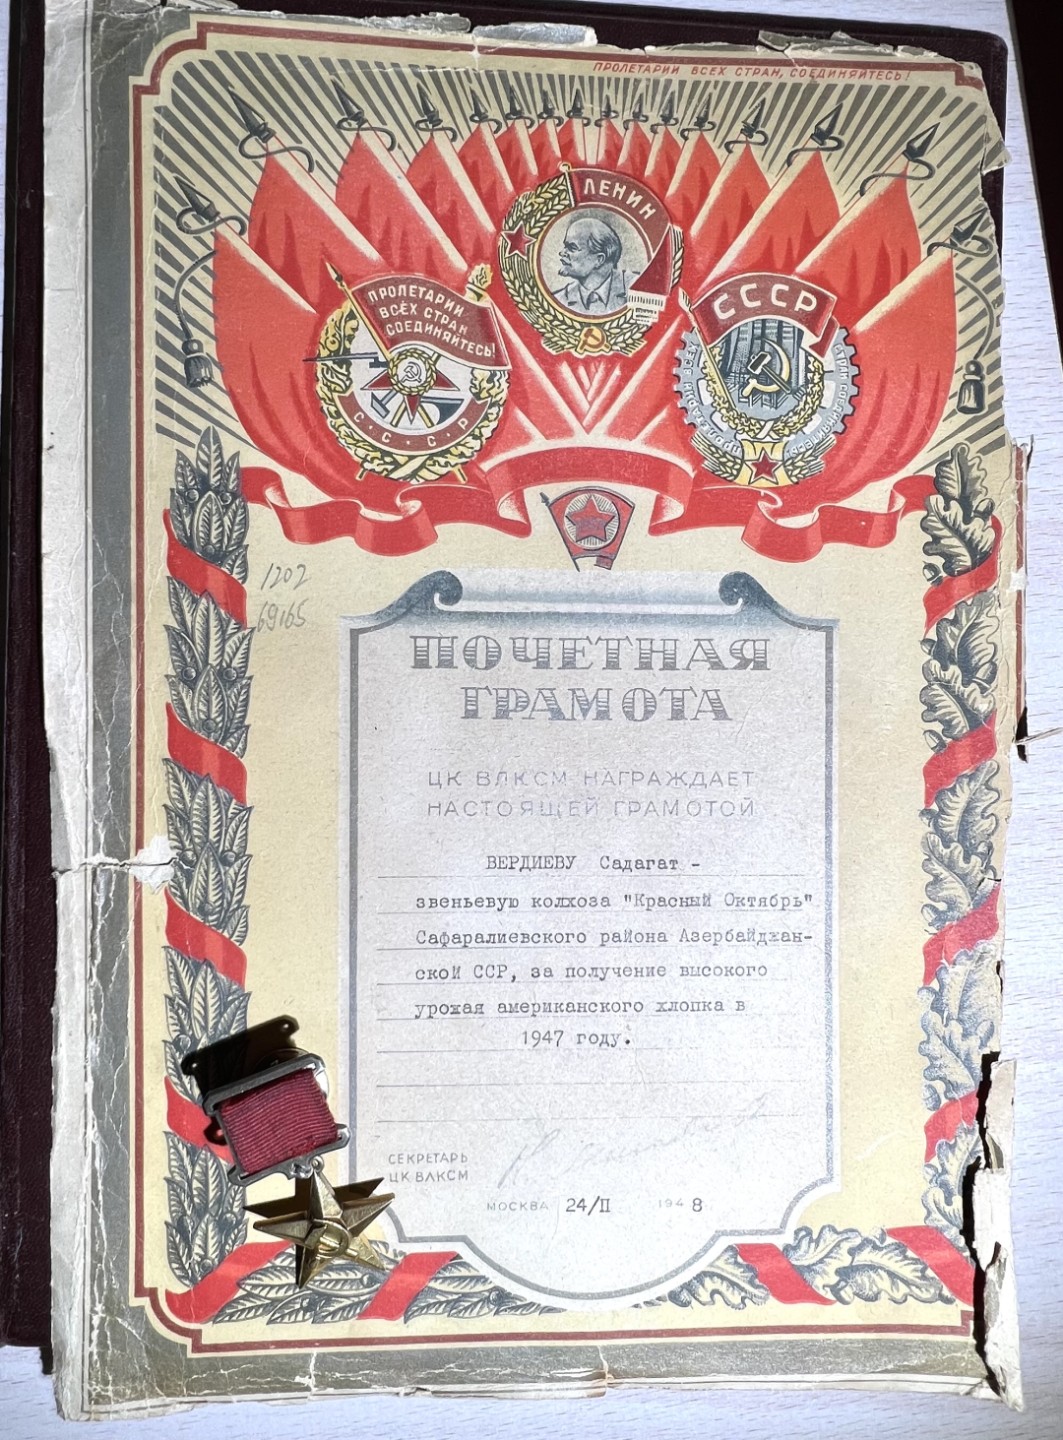 苏联劳动金星套 证书齐全 金质 列宁勋章珐琅12点钟有轻微剥皮